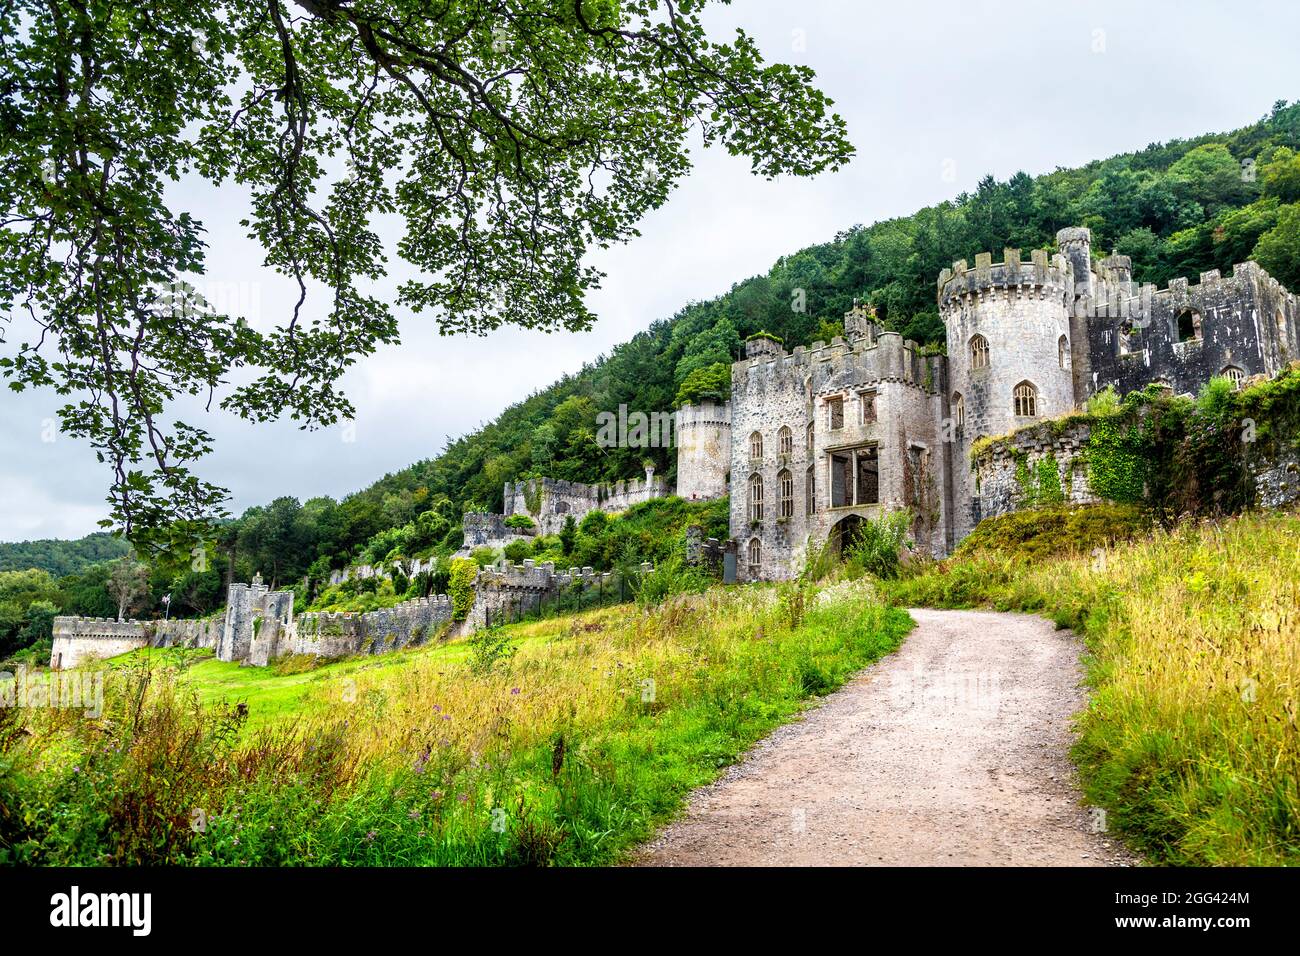 Ruines du château de Gwrych construit au XIXe siècle, Abergele, pays de Galles, Royaume-Uni Banque D'Images